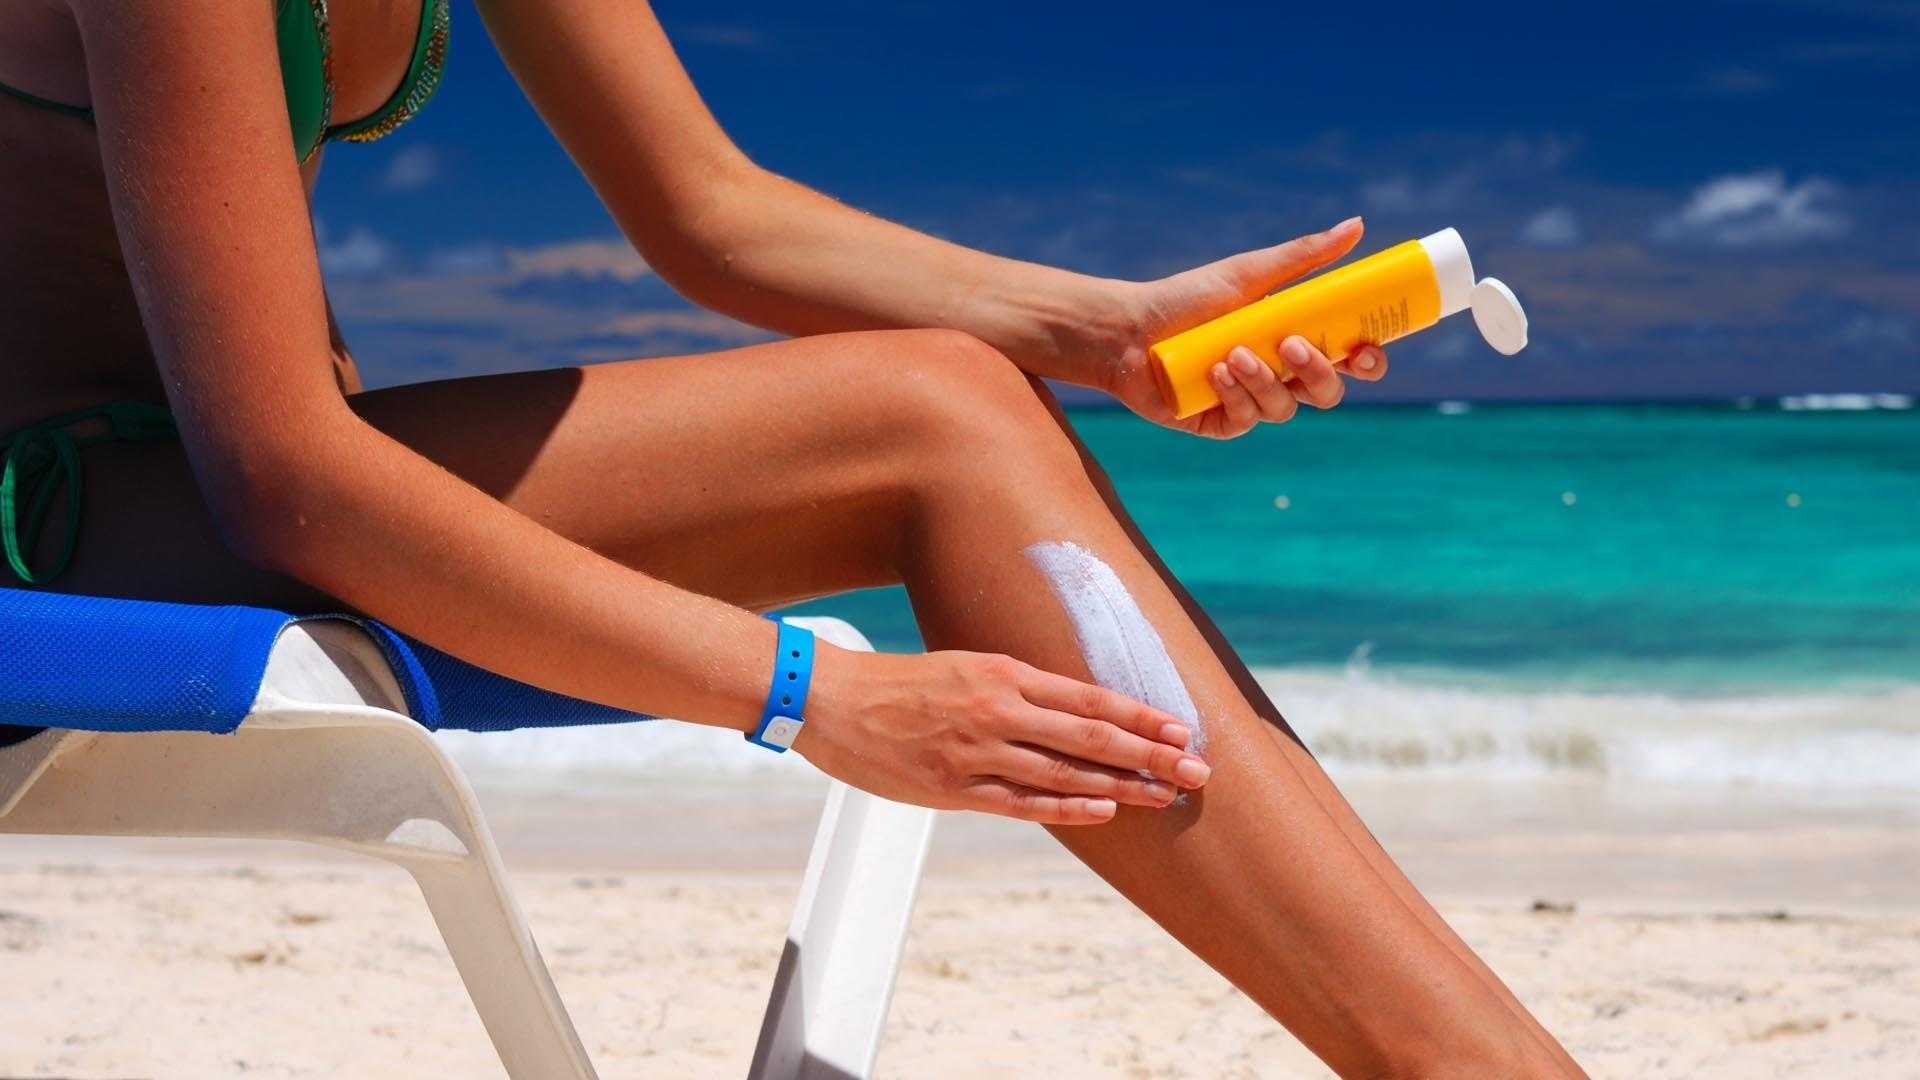 Солнцезащитный лосьон Sunblock. Солнцезащитный крем Sunscreen. Защита кожи от ультрафиолетовых лучей. Крем от загара.